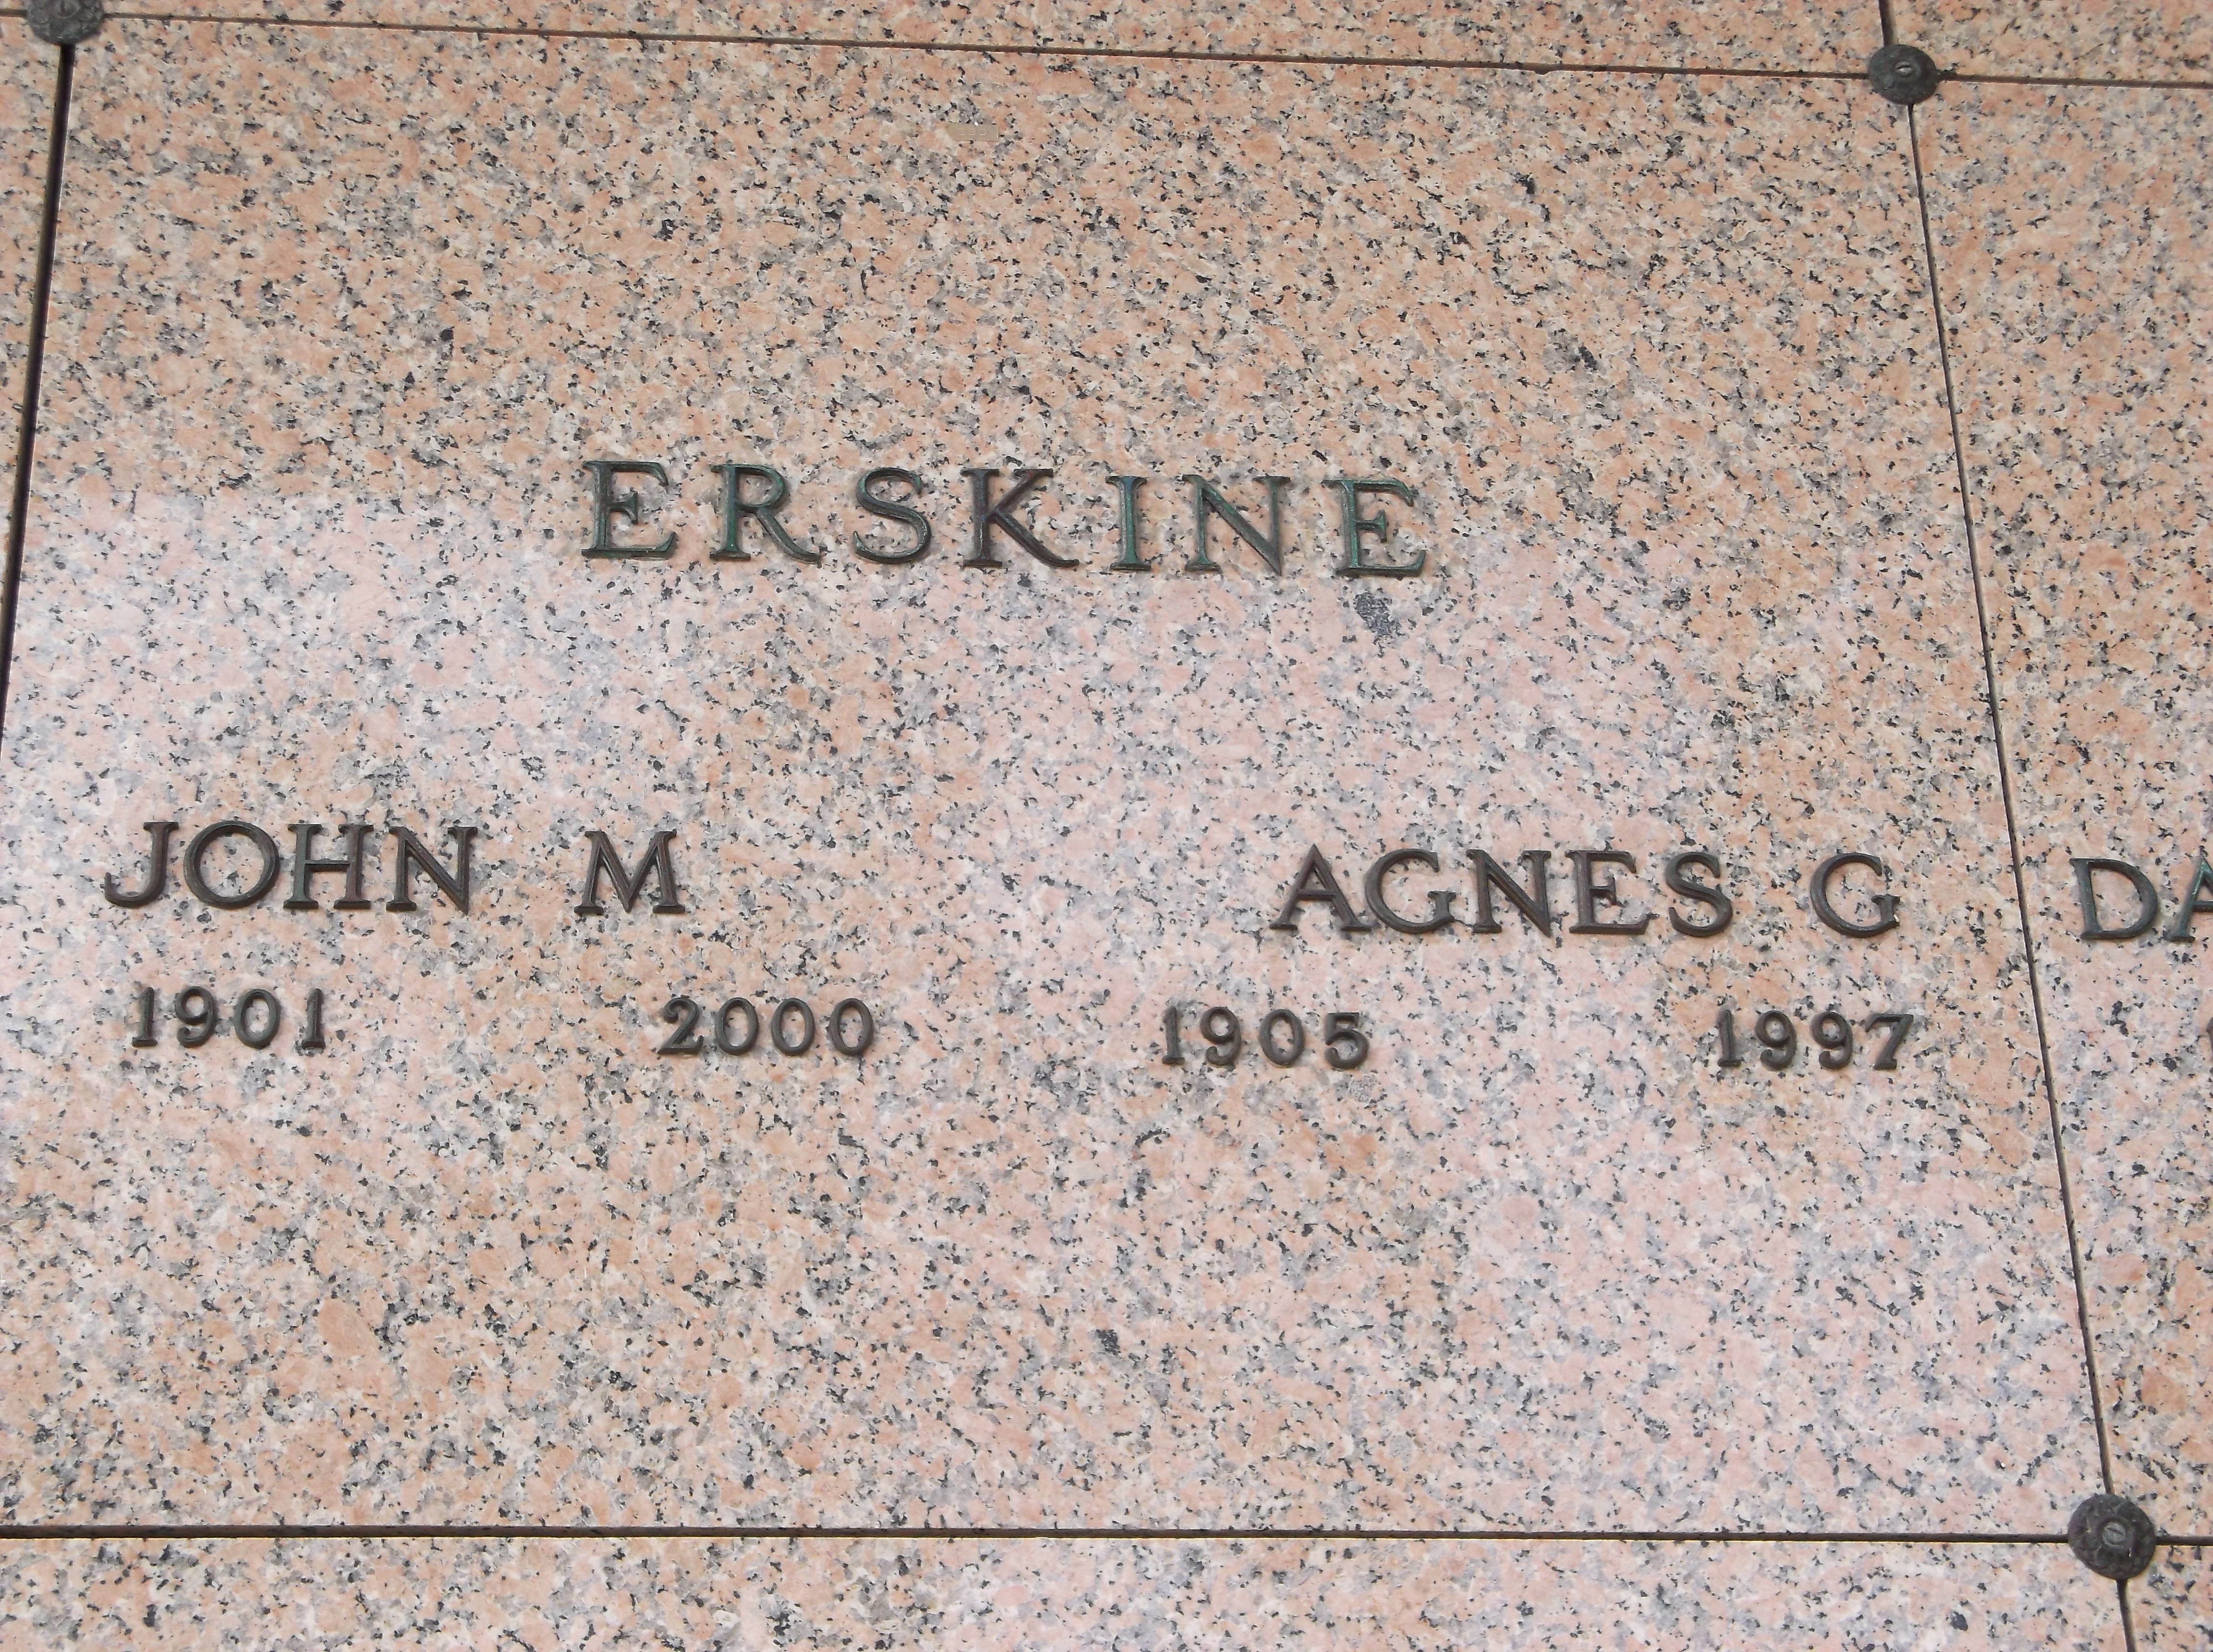 Agnes G Erskine